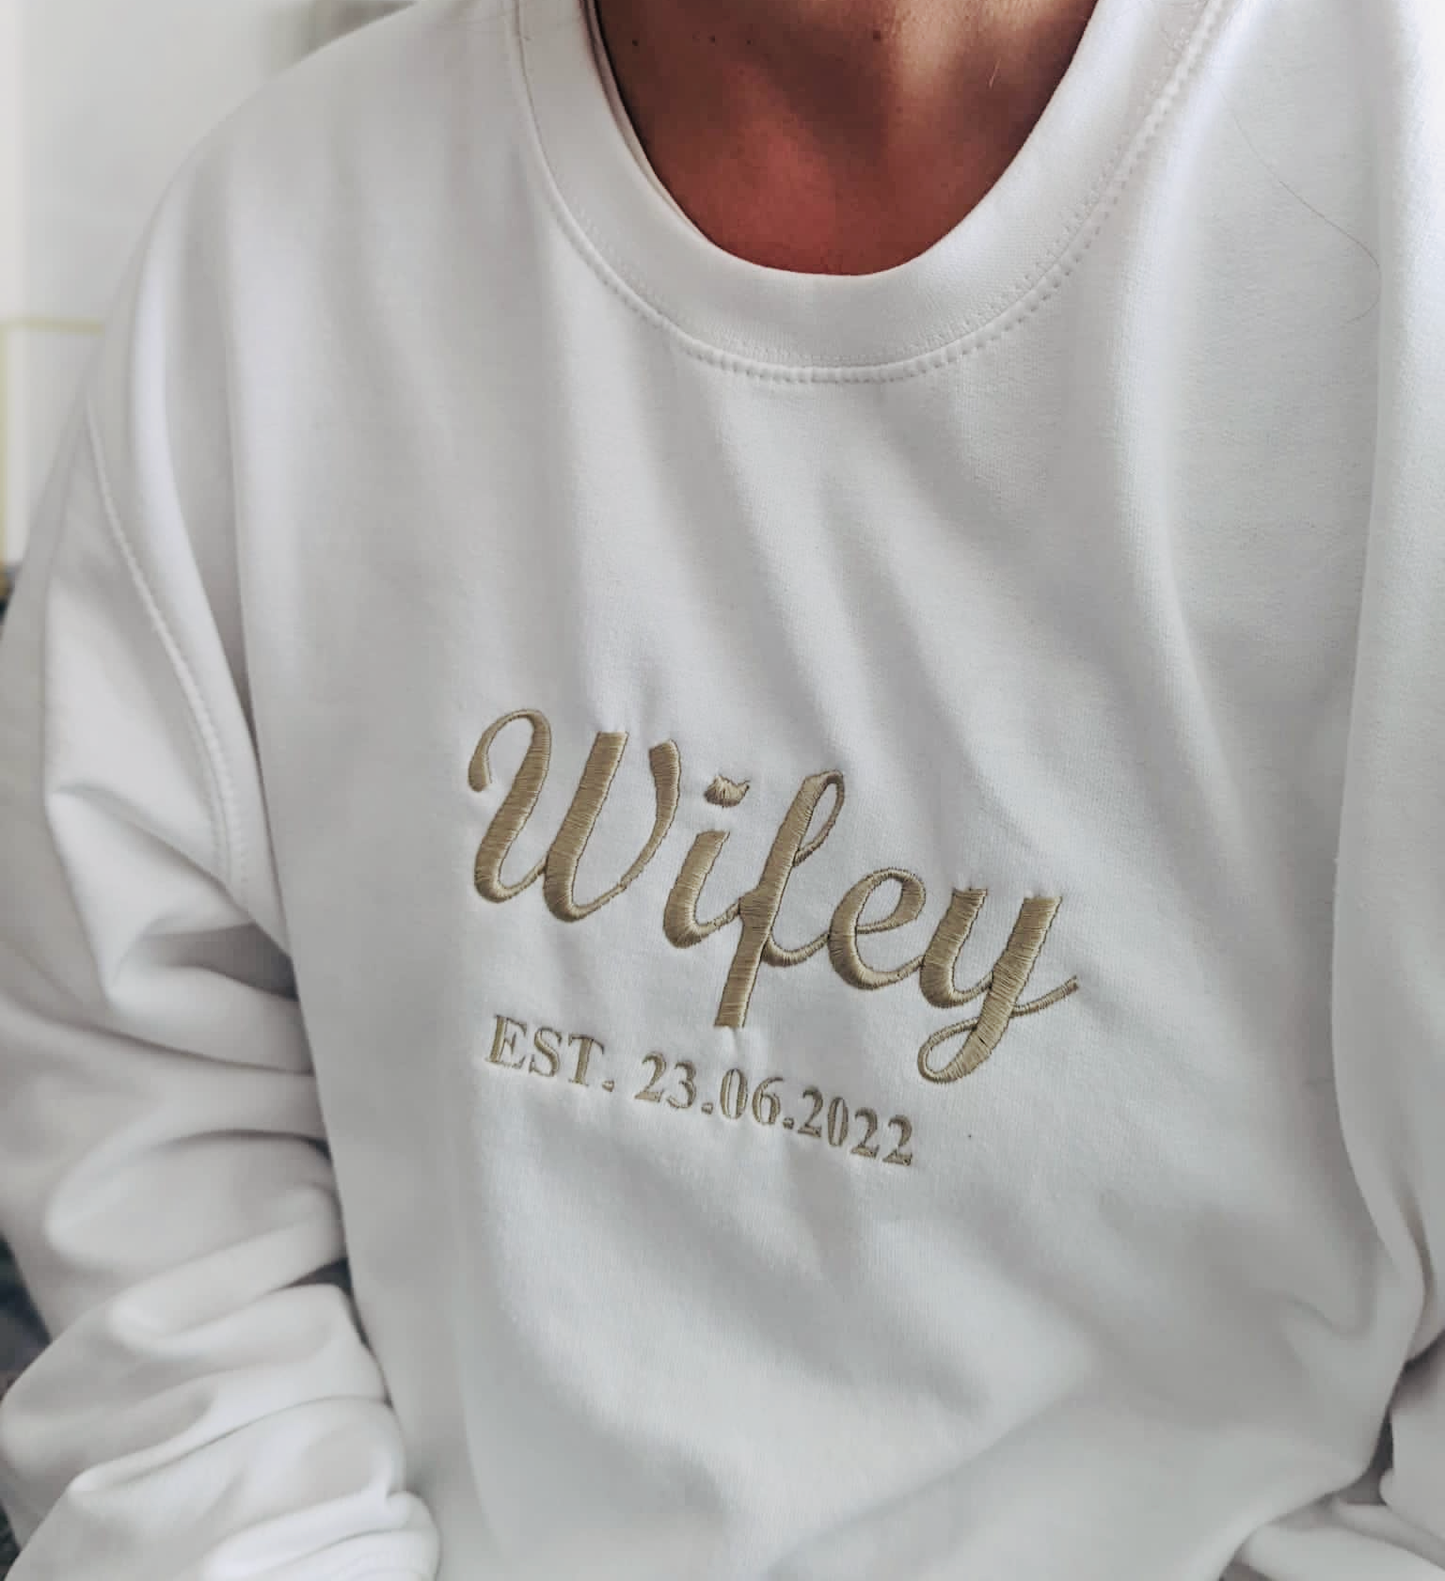 Personalised Bride Sweatshirt